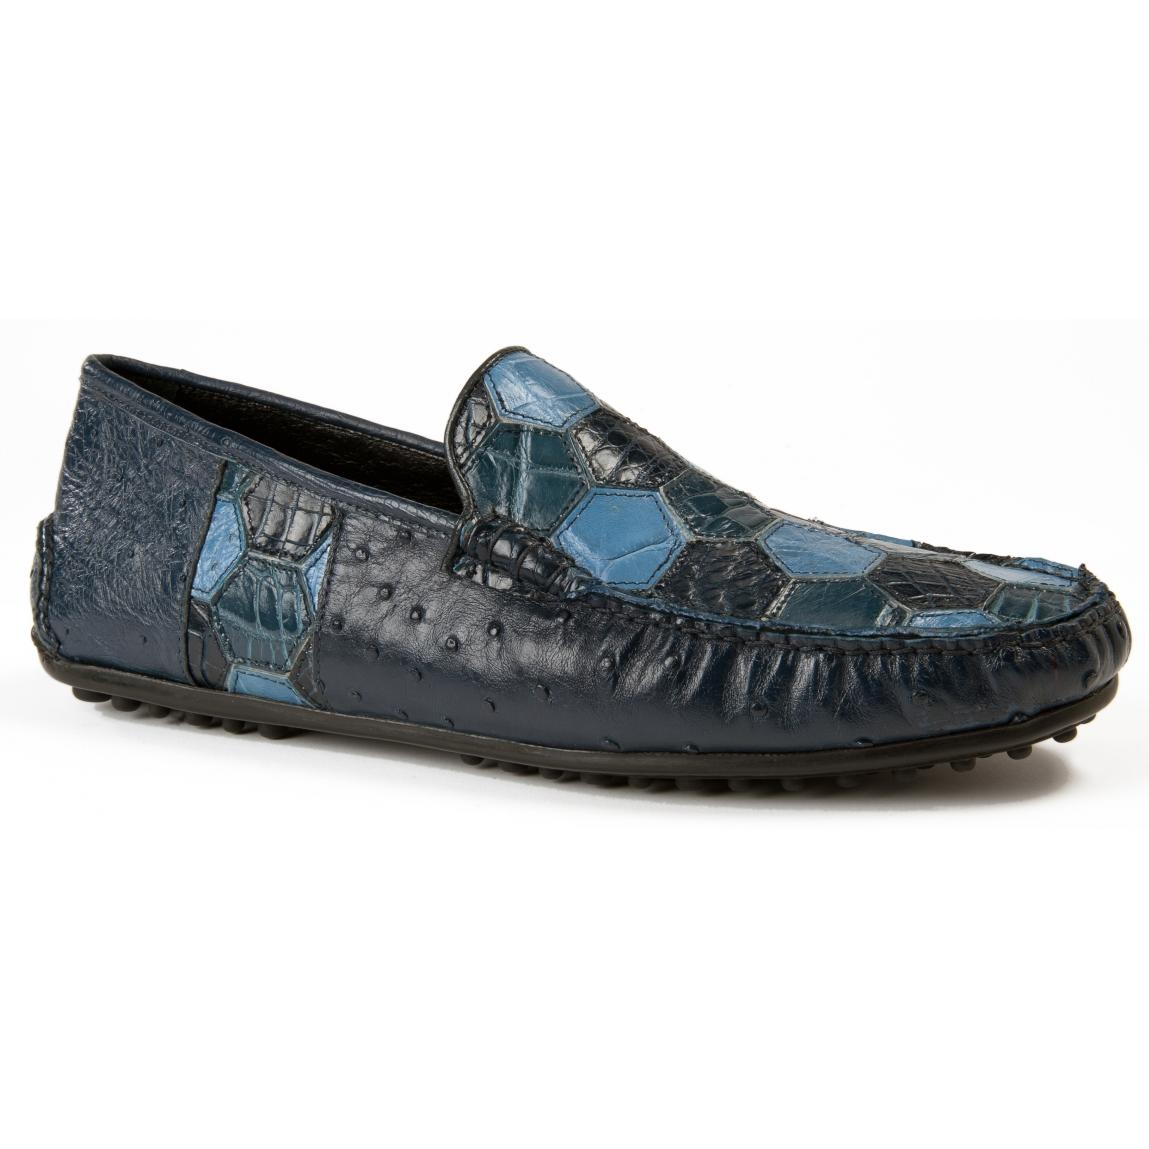 caribbean blue shoes